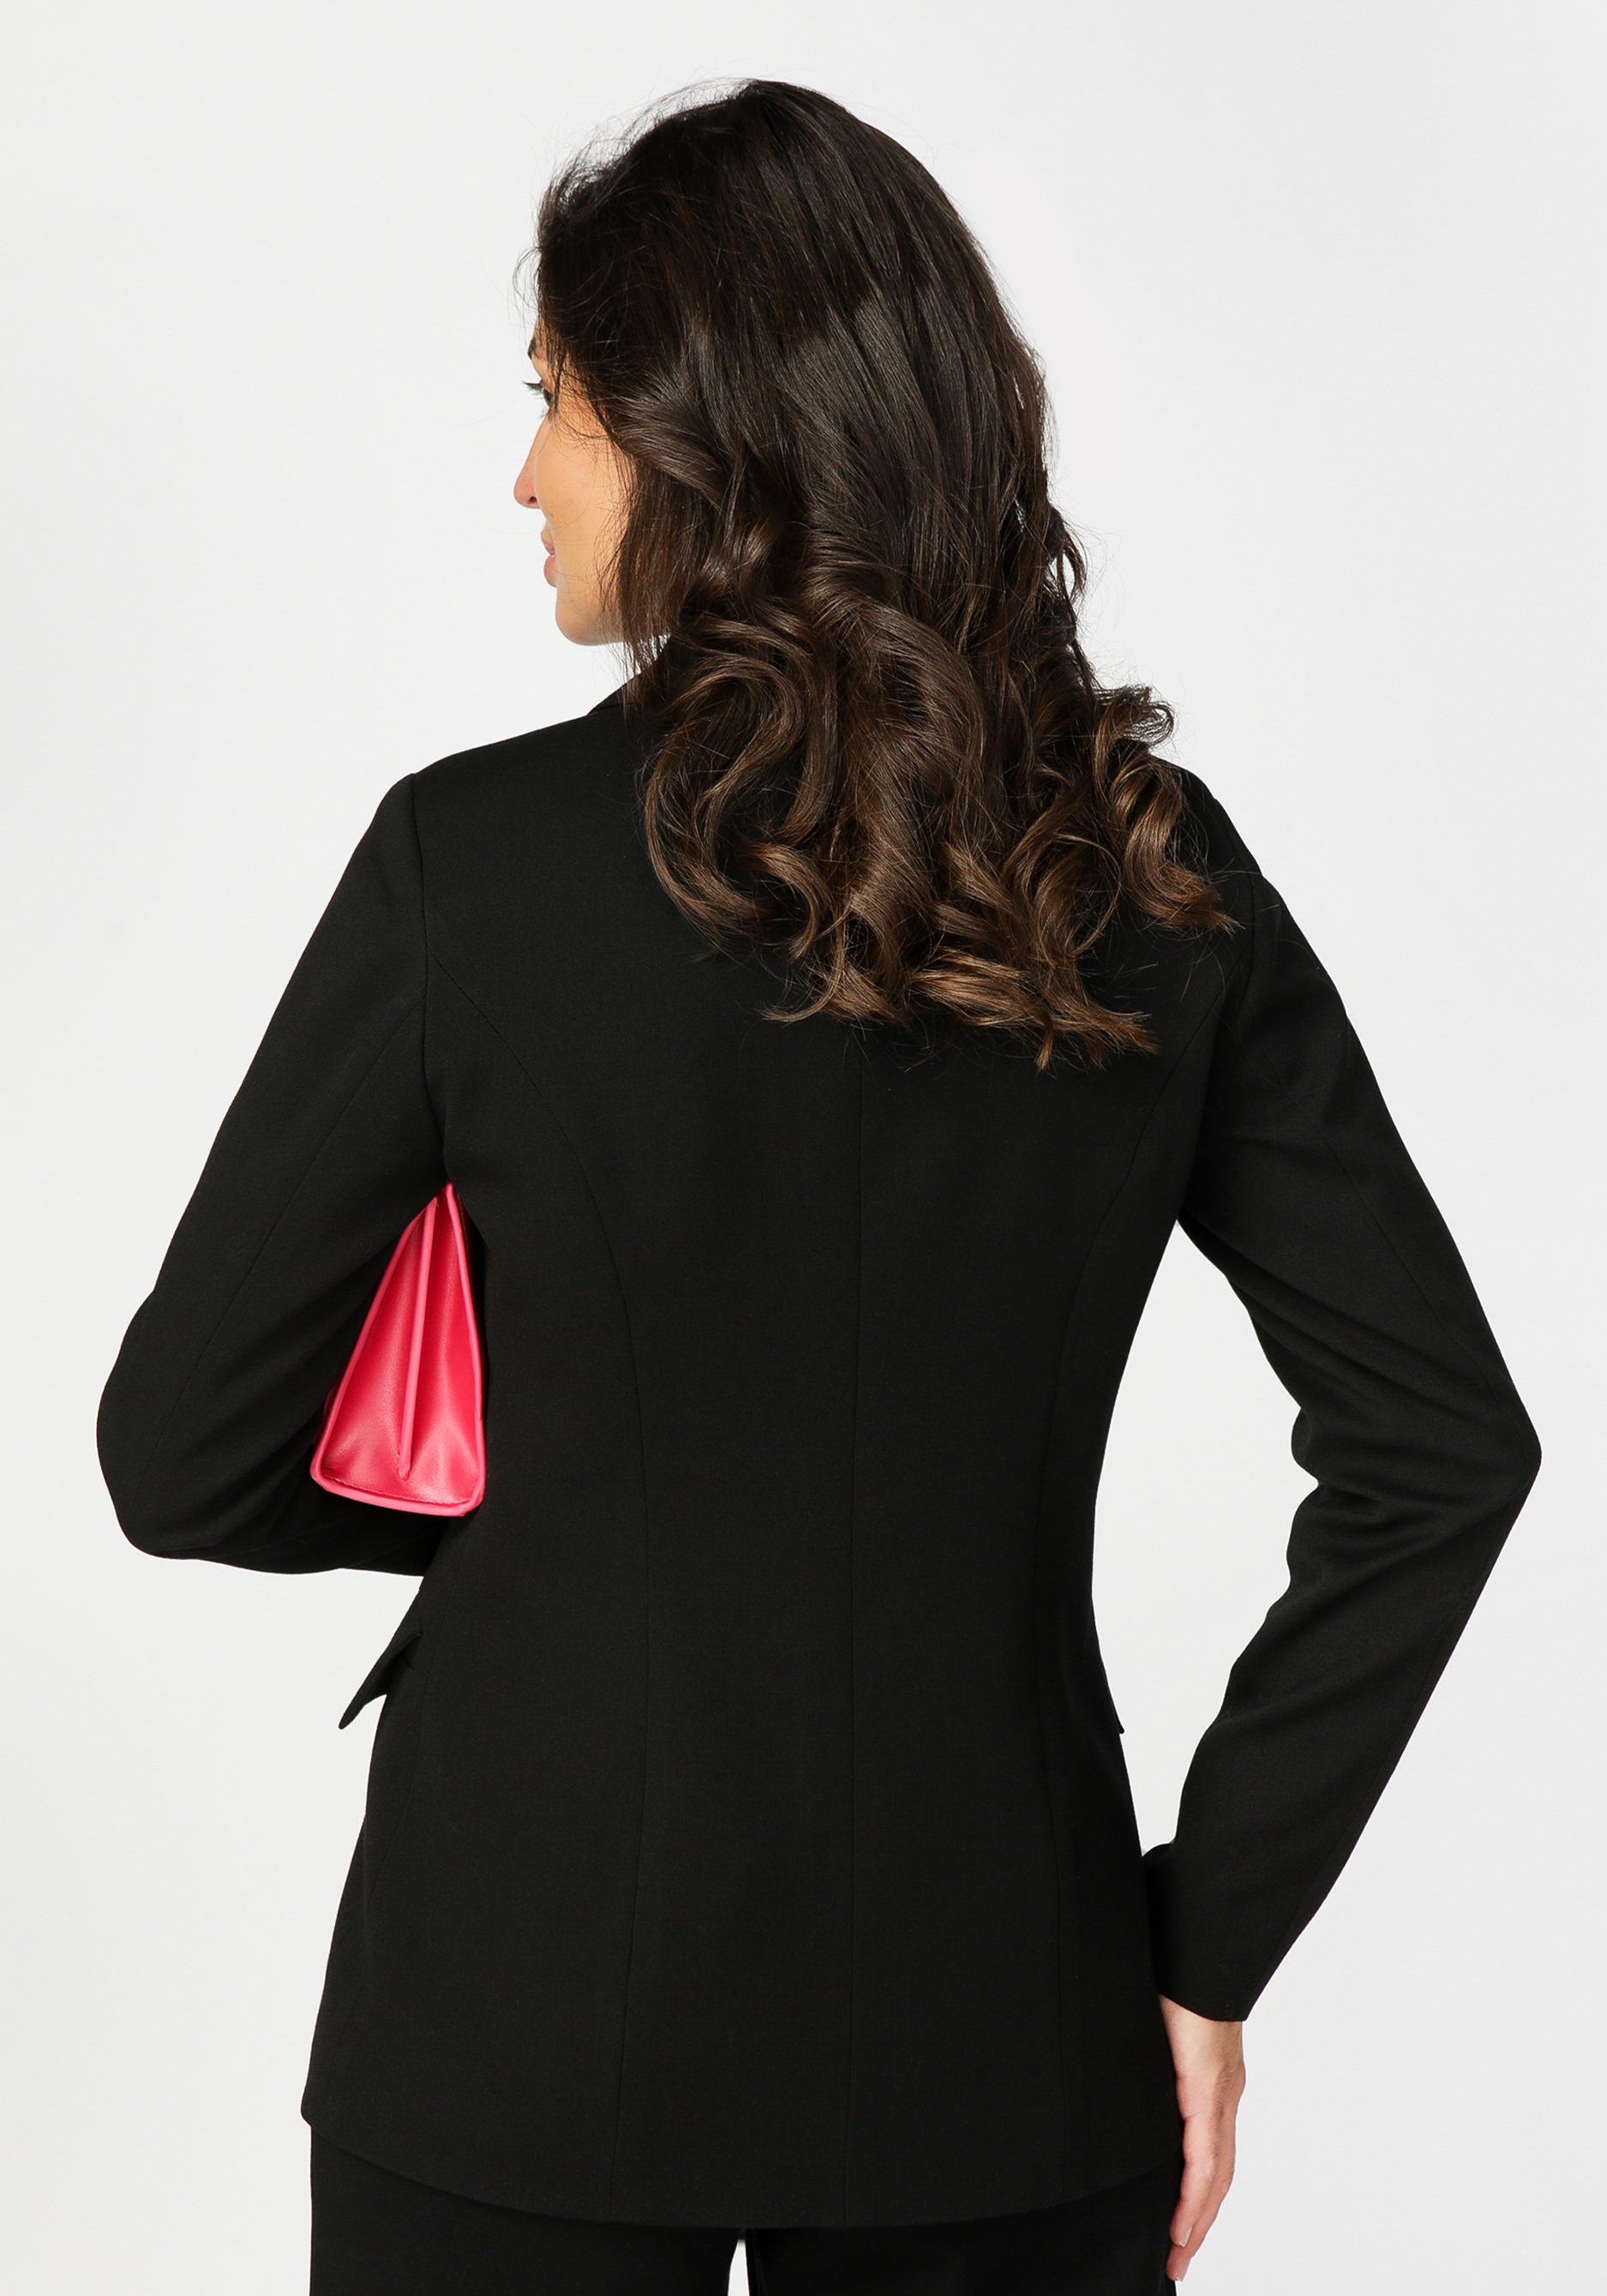 Жакет с вышивкой "Яркий образ" Vivienne Mare, цвет черный, размер 42 - фото 2